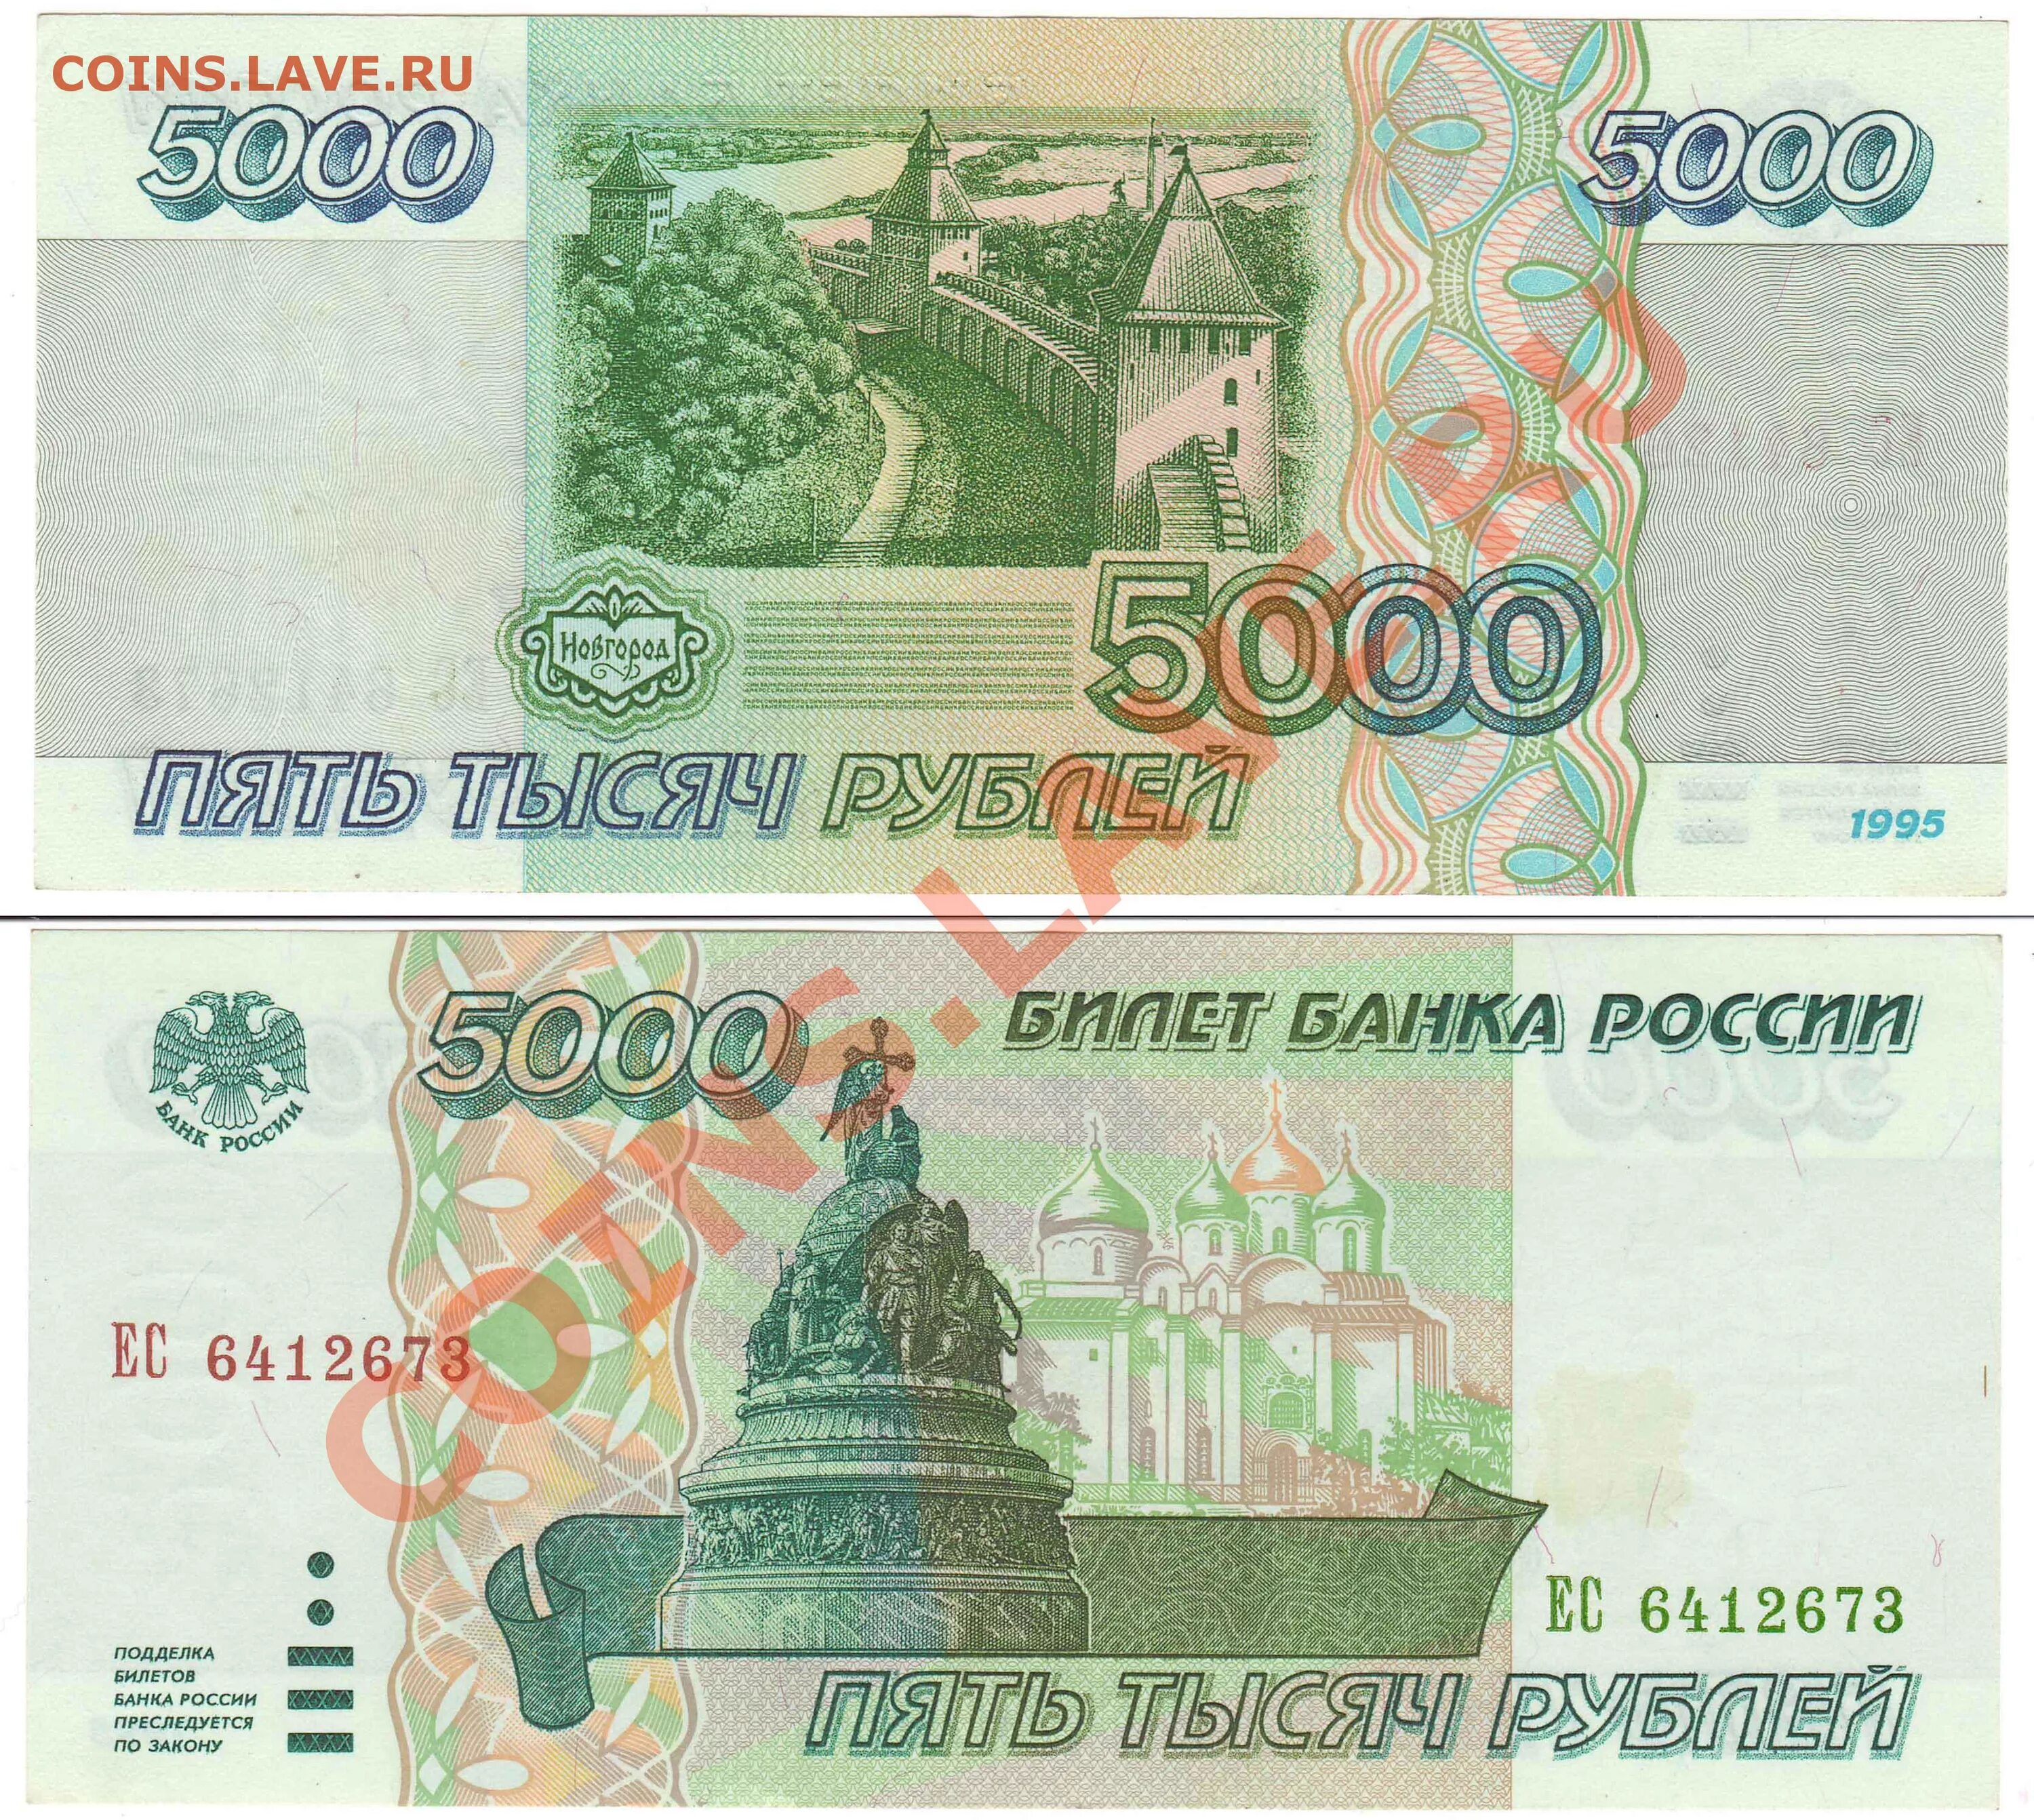 5 тысяч в апреле. 5000 Рублей купюра 1995. Банкнота 5000 рублей 1995. Банкнота 5000 рублей 1995 года. Деньги 1995 года в России.